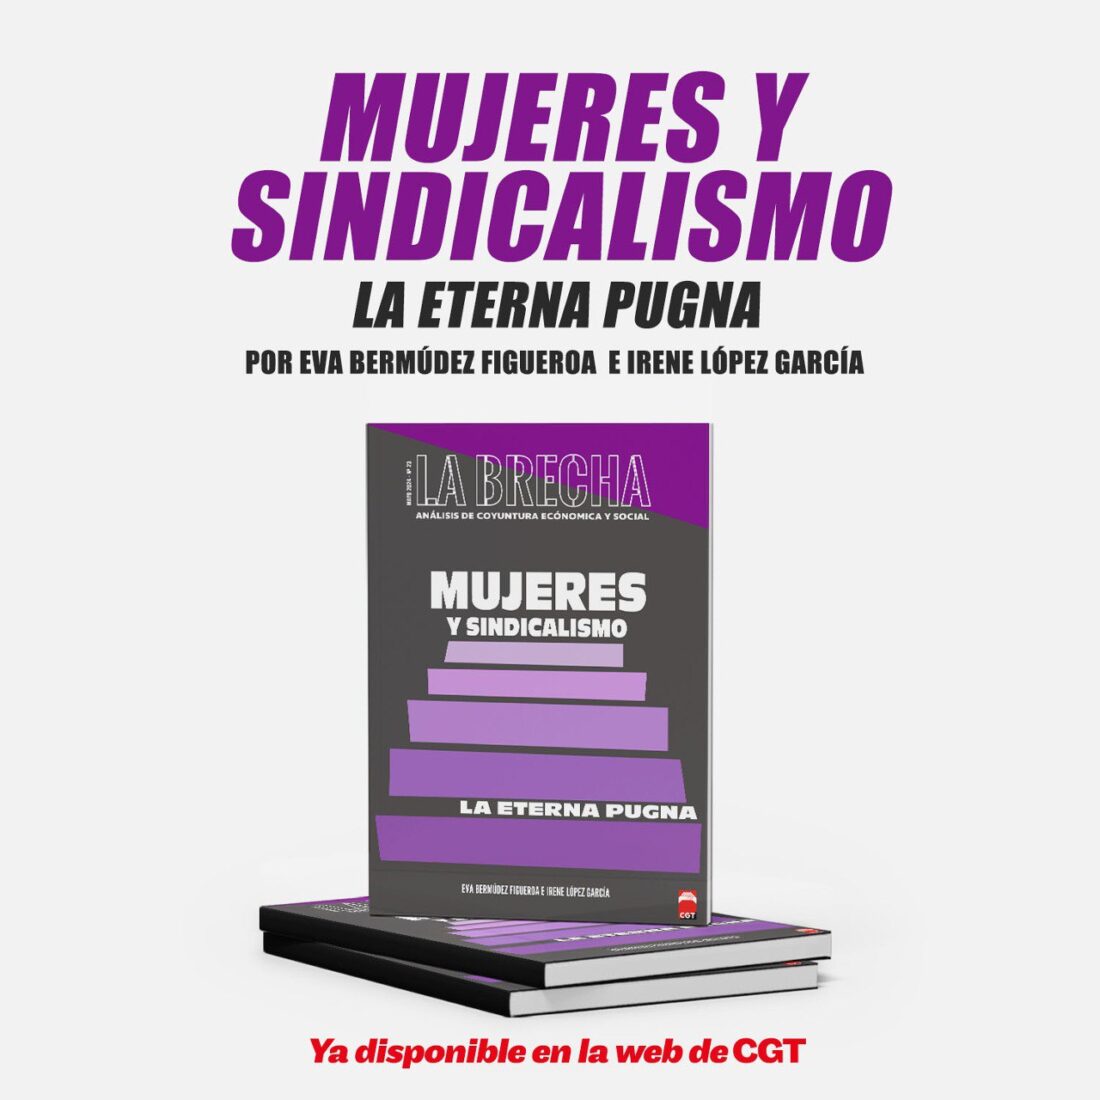 CGT presenta el nuevo número de ‘La Brecha’ con el título “Mujeres y sindicalismo: la eterna pugna”.